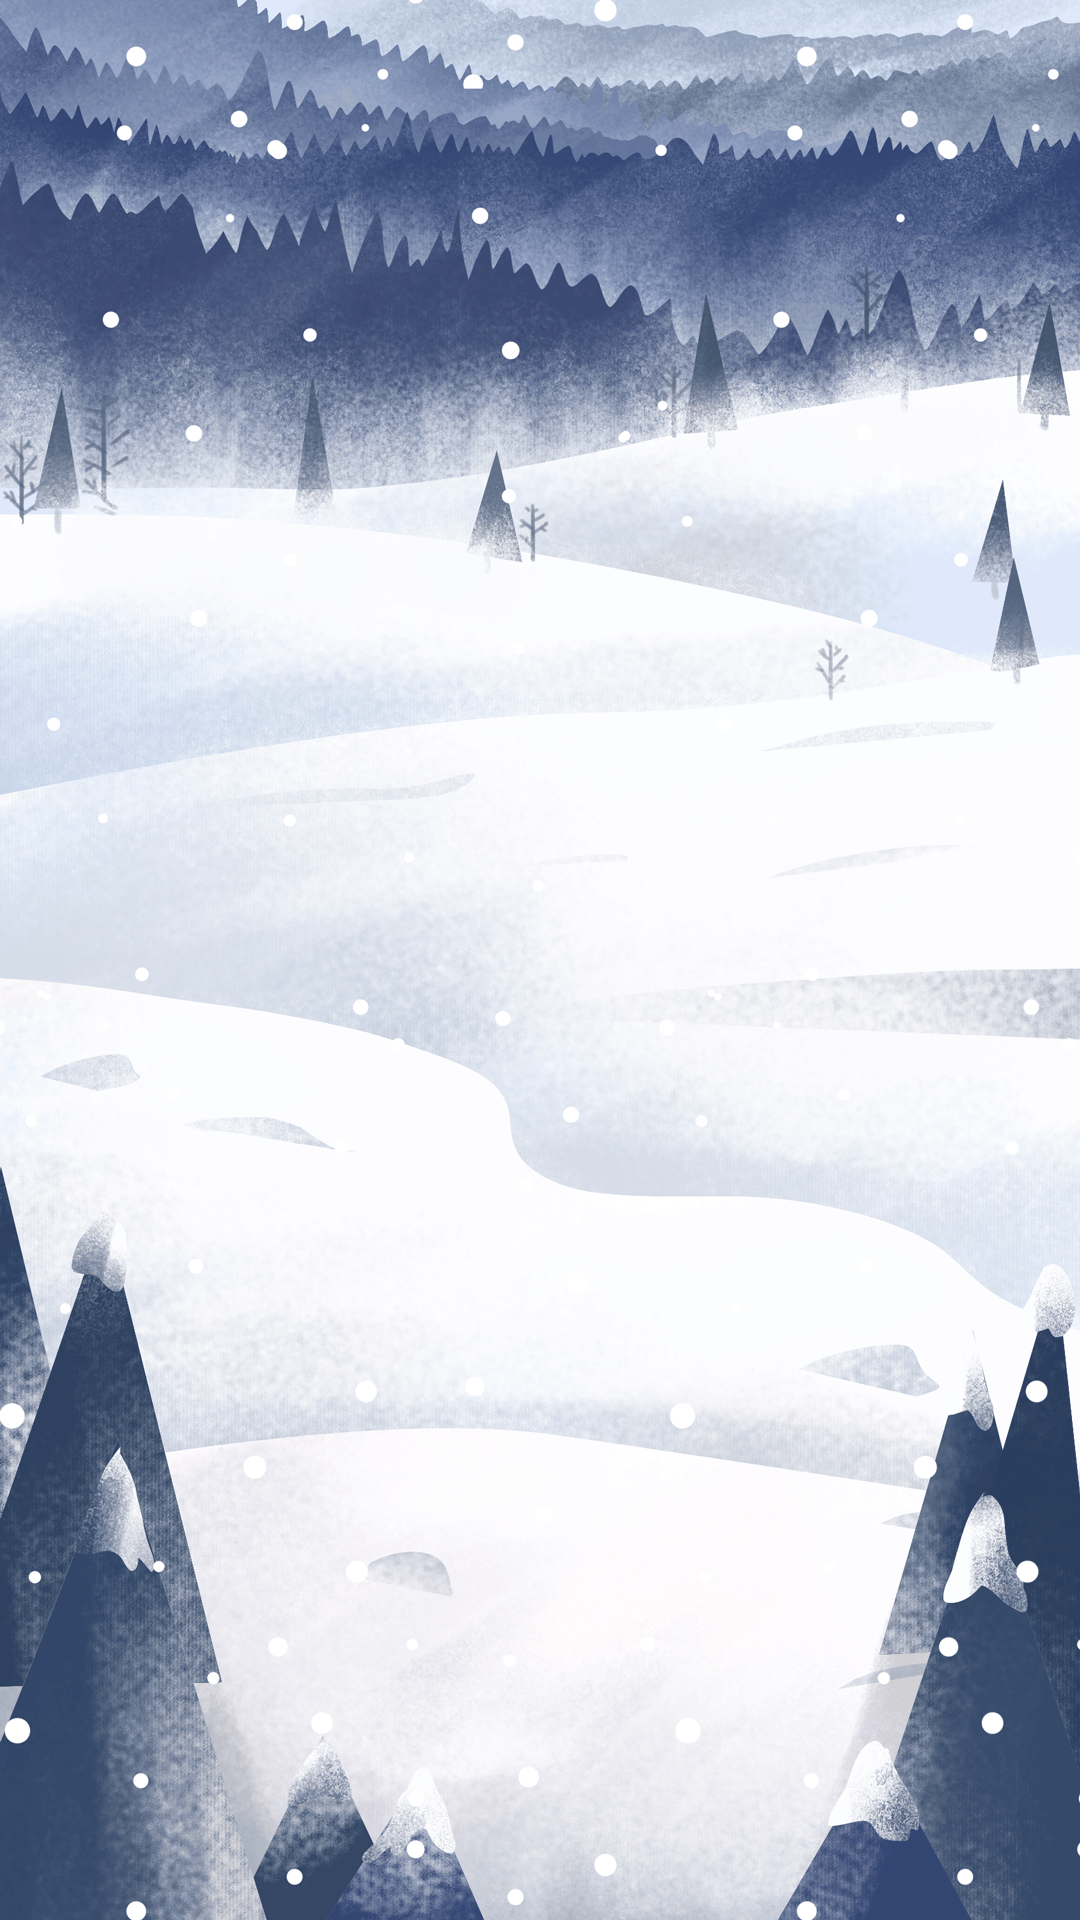 Tranhto24h: Hình nền động rừng tuyết, 1080x1920px